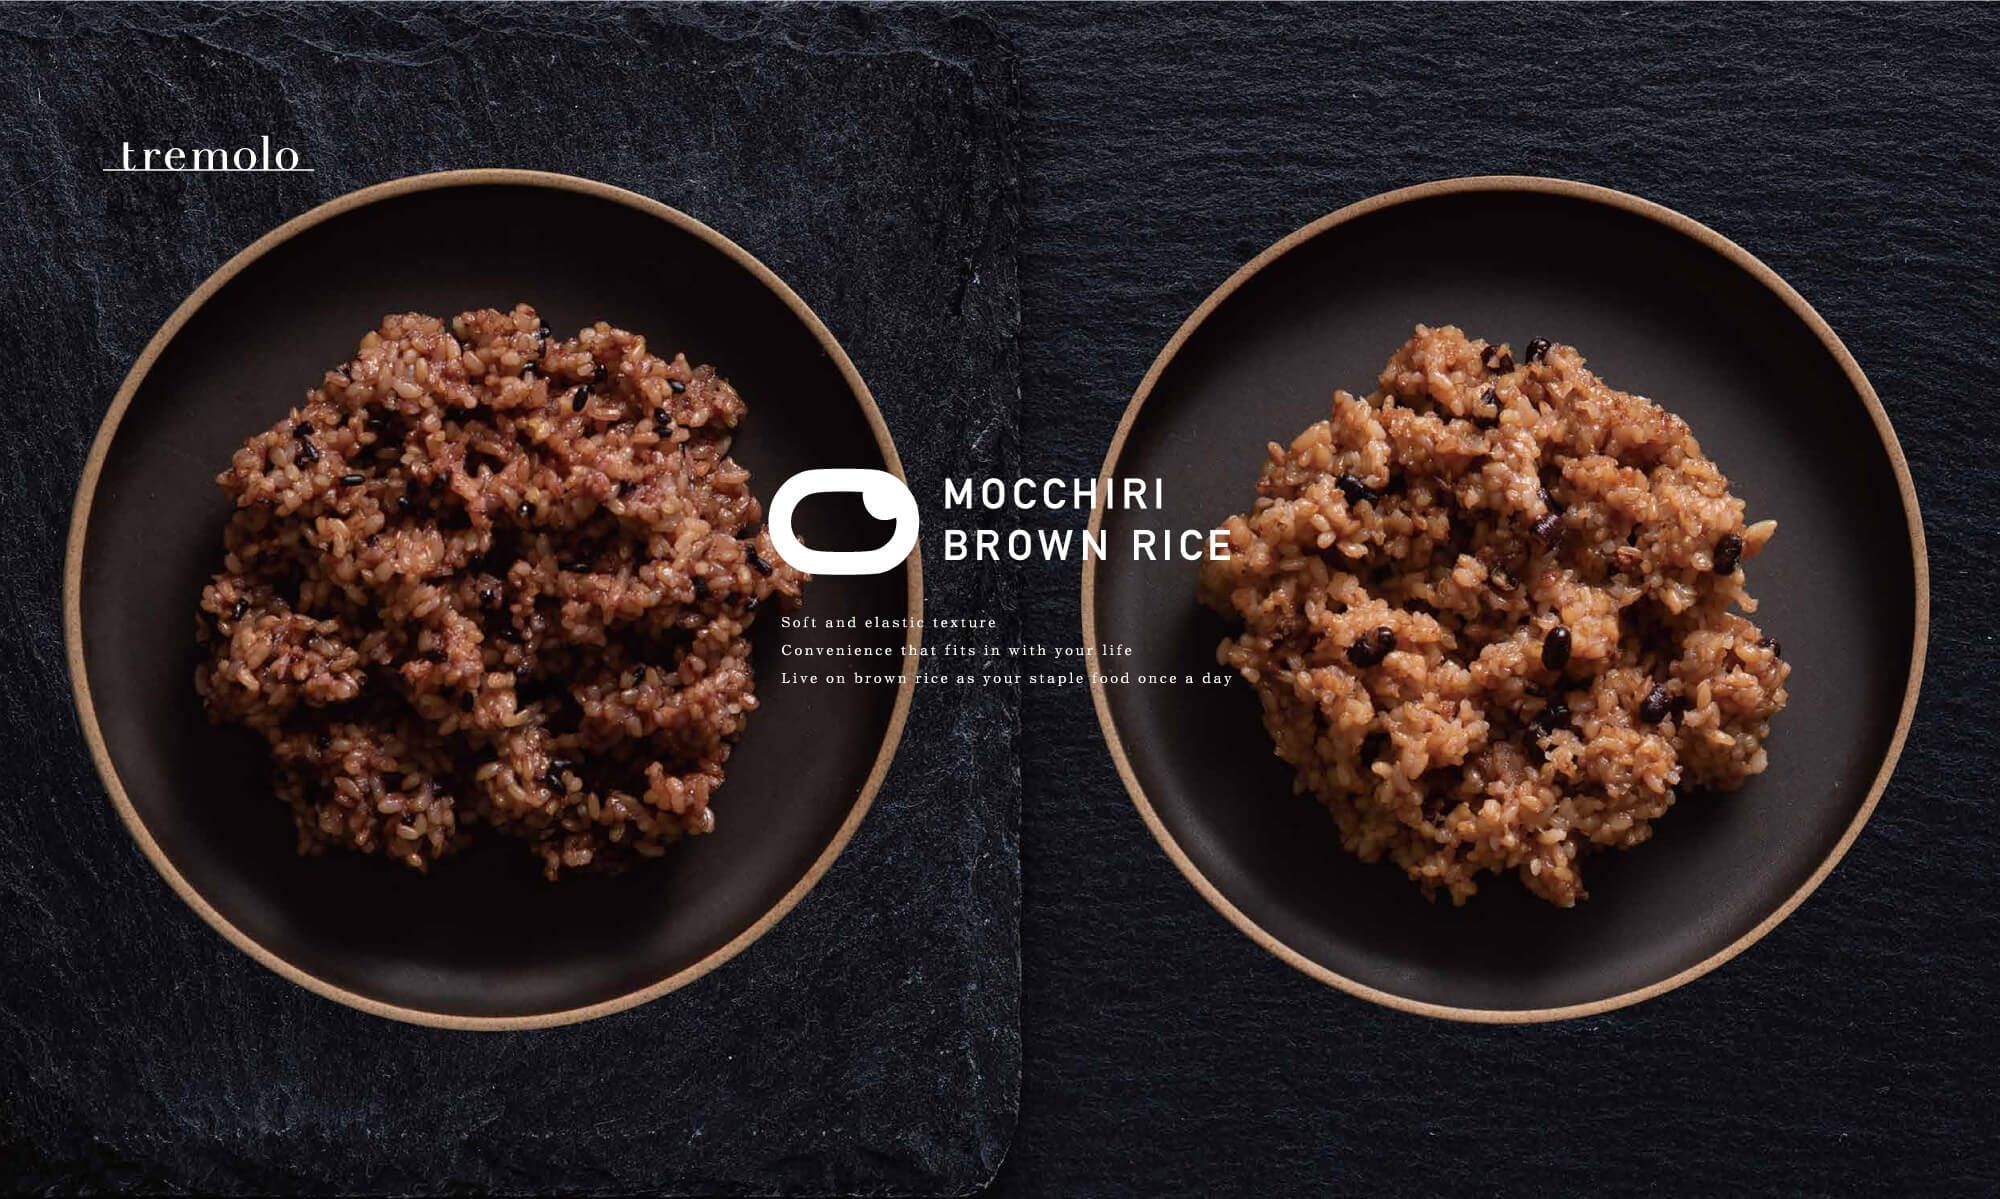 MOCCHIRI BROWN RICE | 株式会社ビーエイチ | 理美容・エステサロン向けオリジナル商品の企画開発